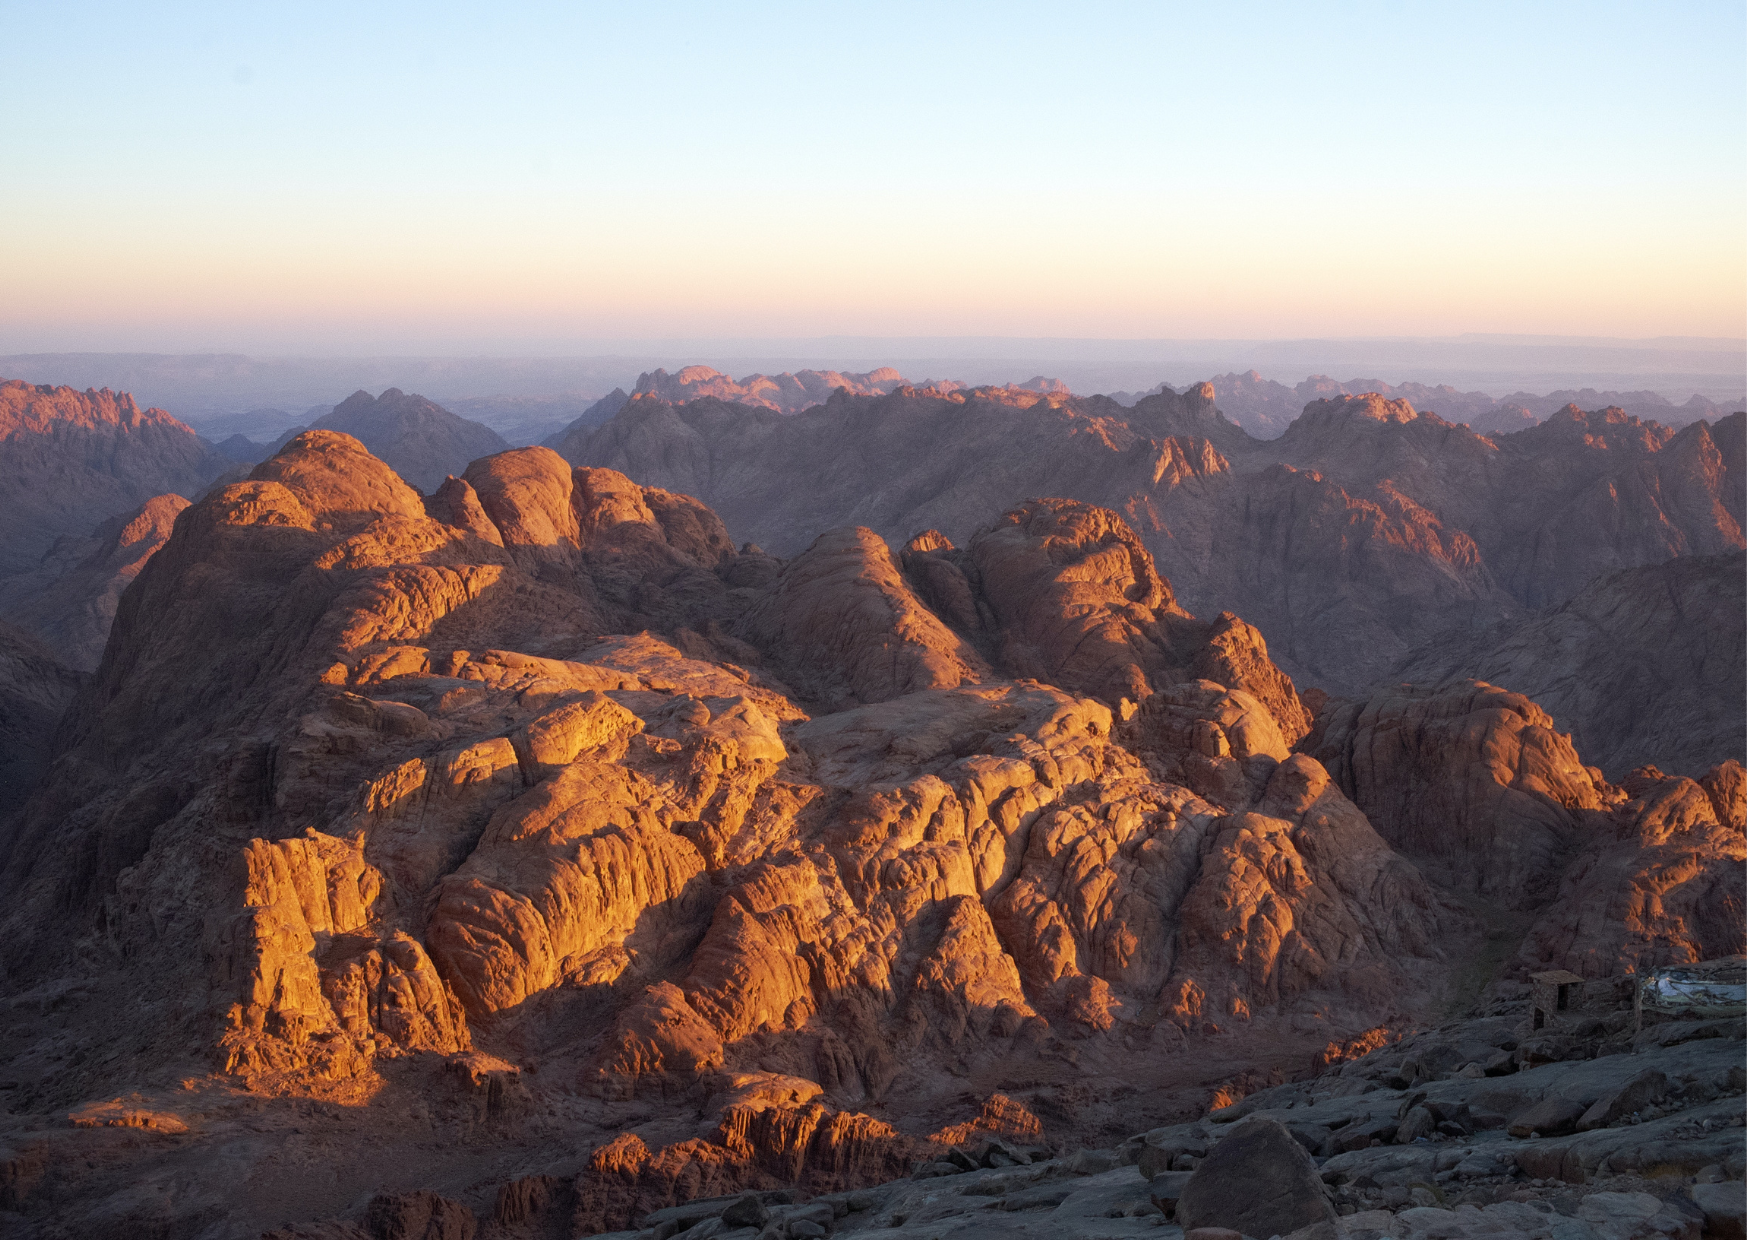 Sinai (c) Photo by Artem Labunsky on unsplash